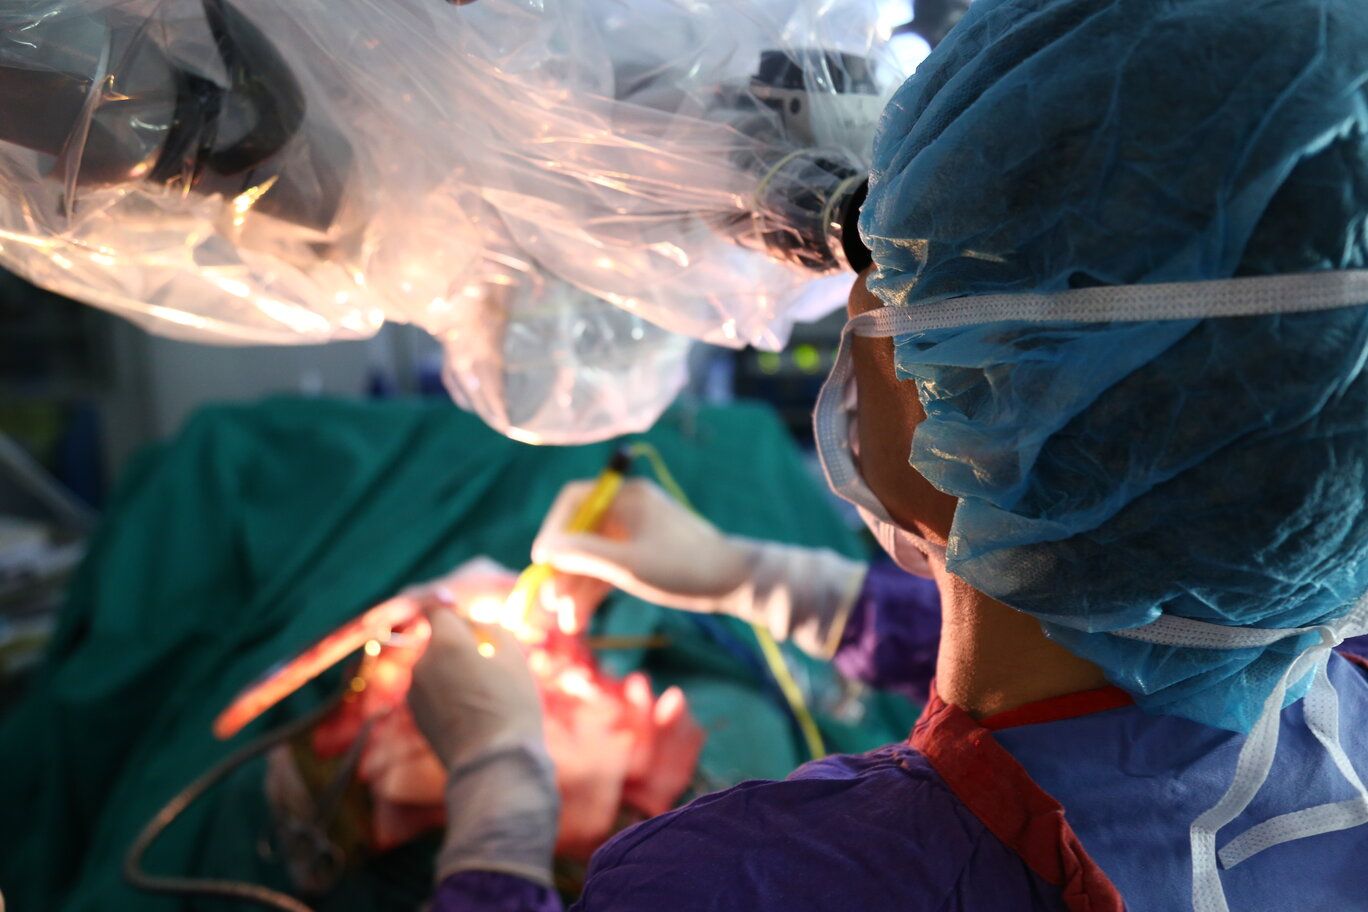 Đi khám vì mờ mắt, nữ bệnh nhân được chẩn đoán có khối phình mạch não khổng lồ - Bệnh viện Việt Đức